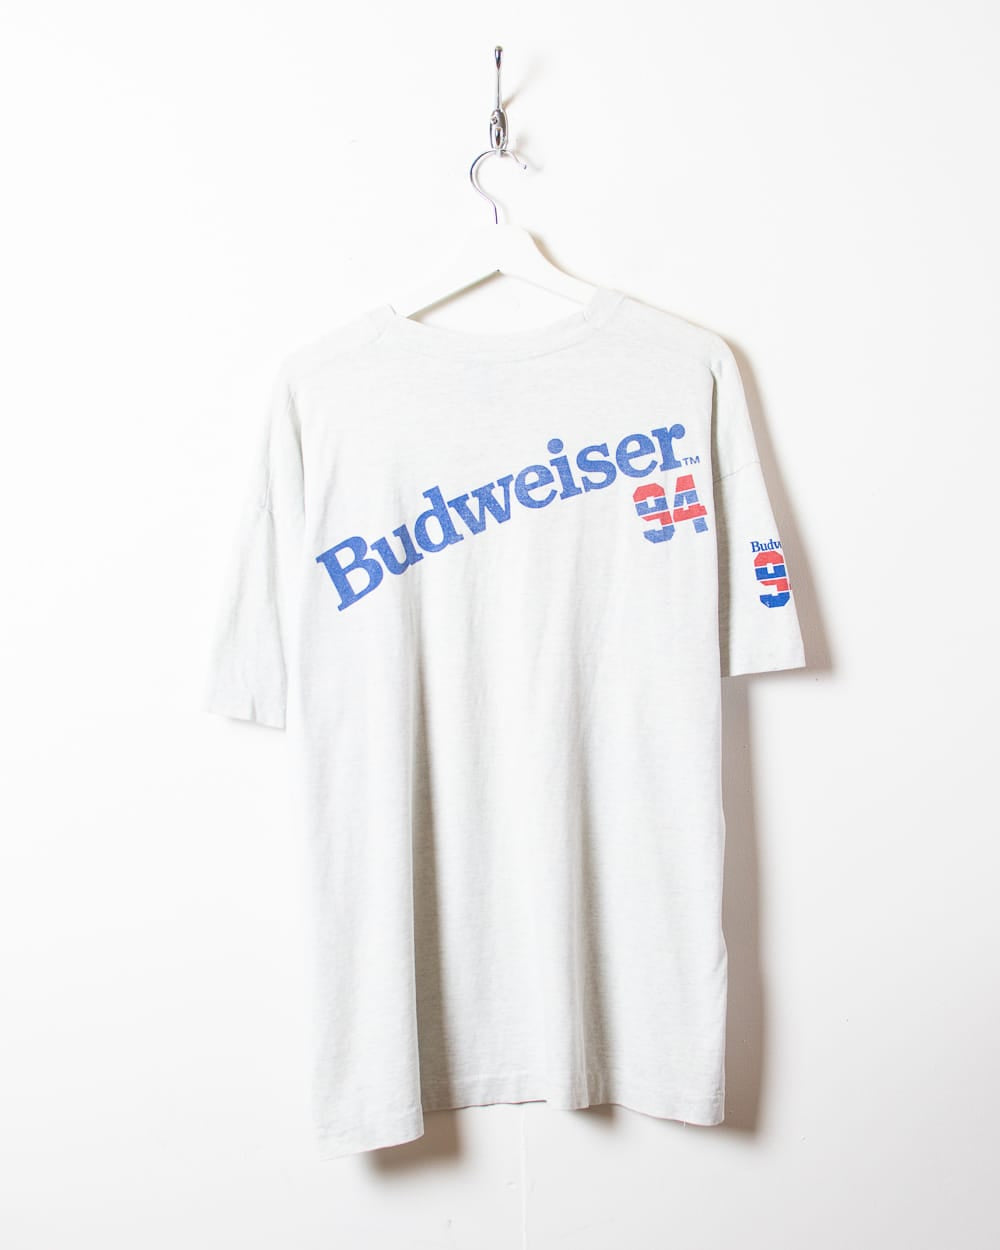 Stone Budweiser 94 Single Stitch T-Shirt - X-Large